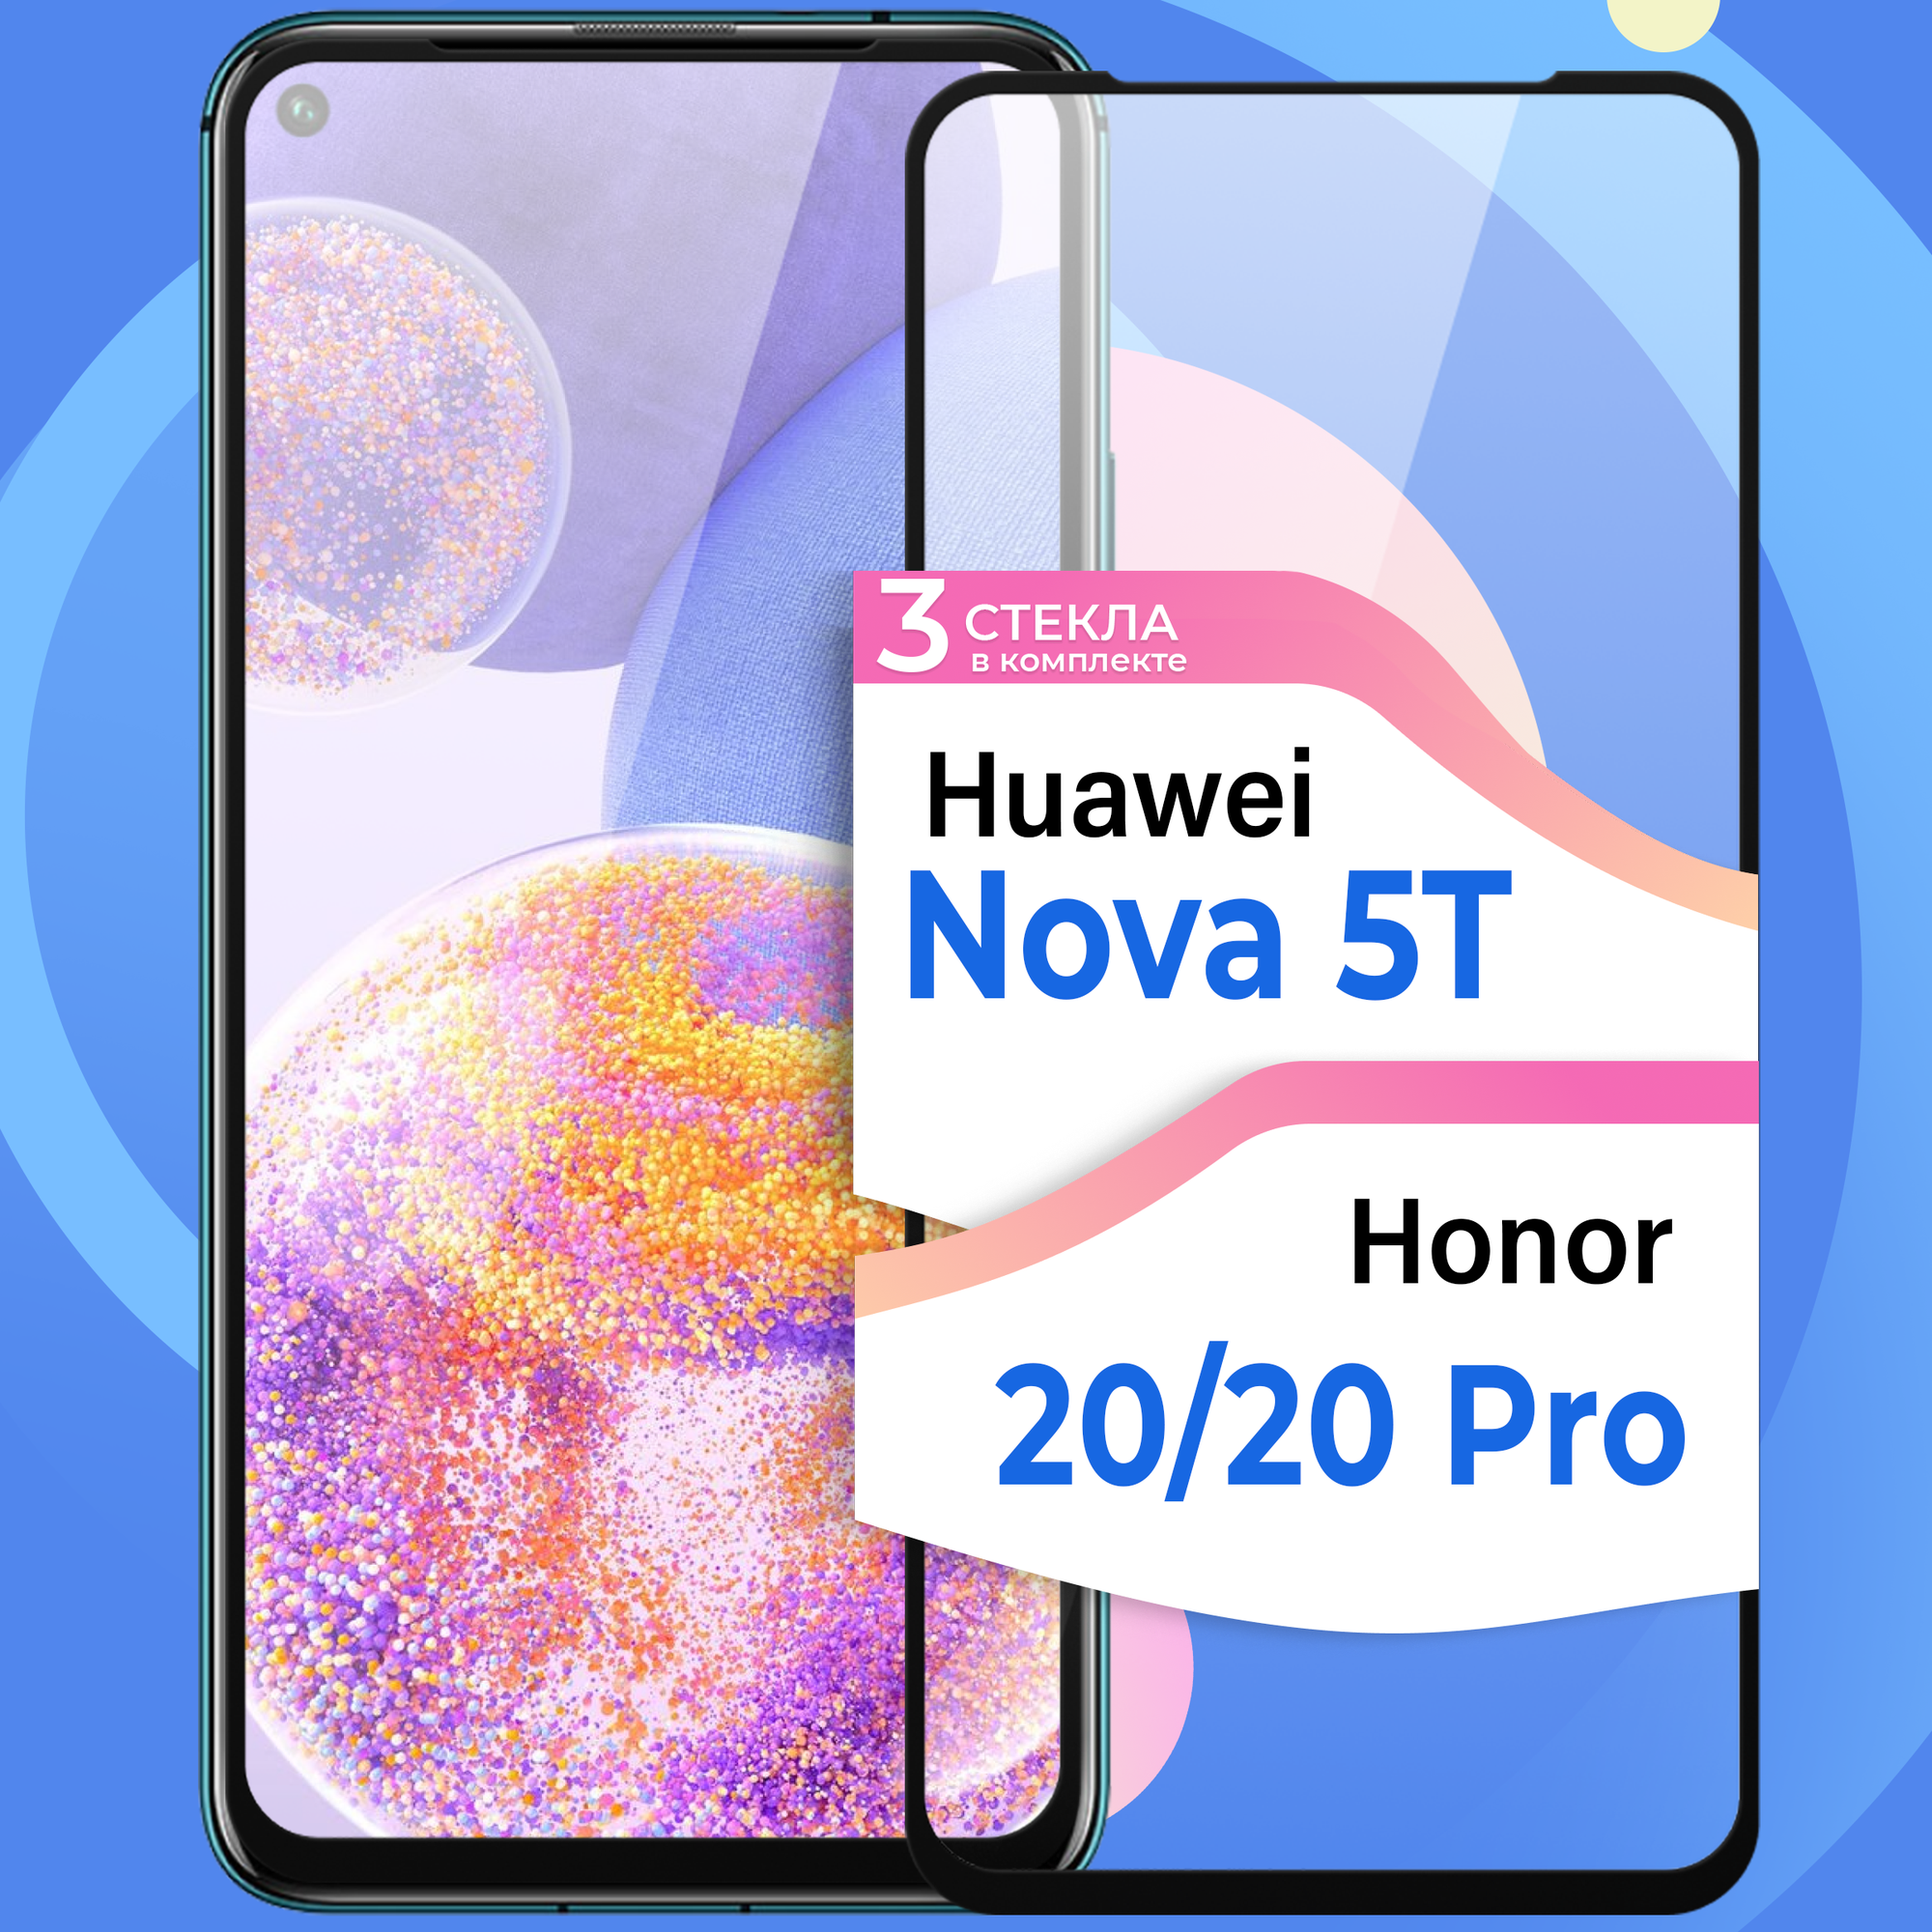 Комплект 3 шт. Защитное стекло на телефон Honor 20, Honor 20 Pro, Huawei Nova 5T / Противоударное олеофобное стекло для смартфона Хонор 20, Хонор 20 Про, Хуавей Нова 5Т